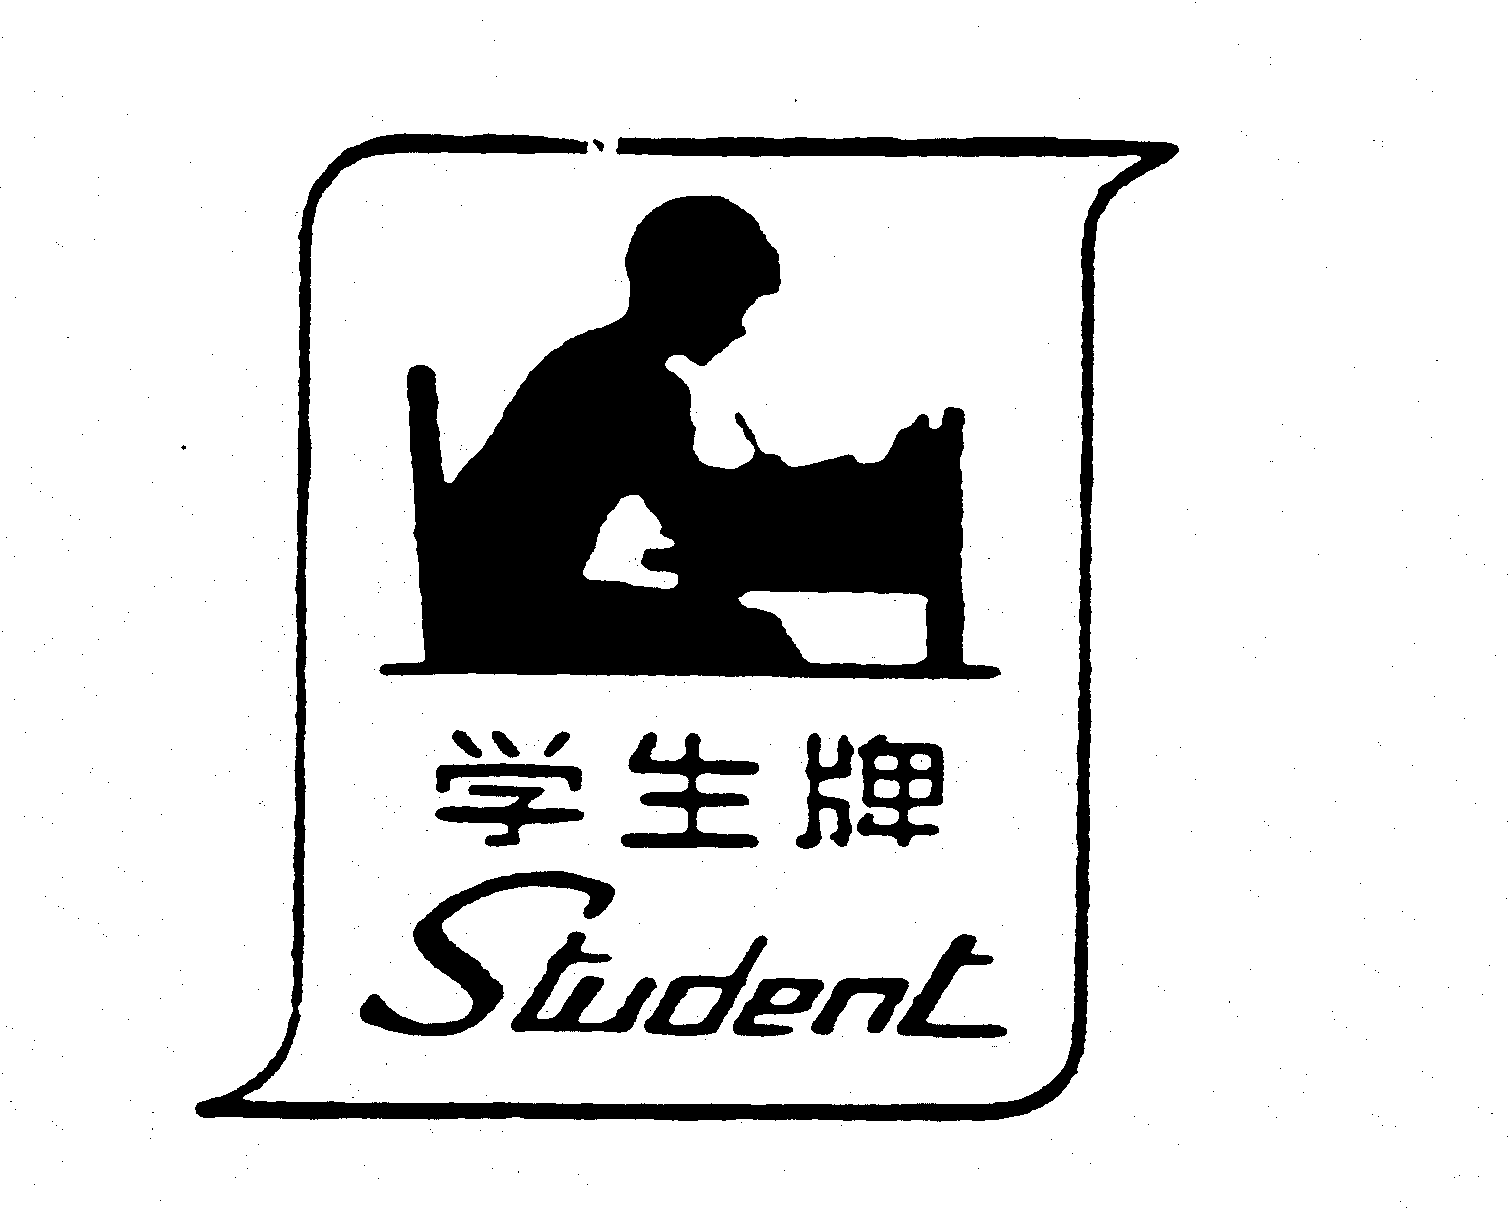 STUDENT